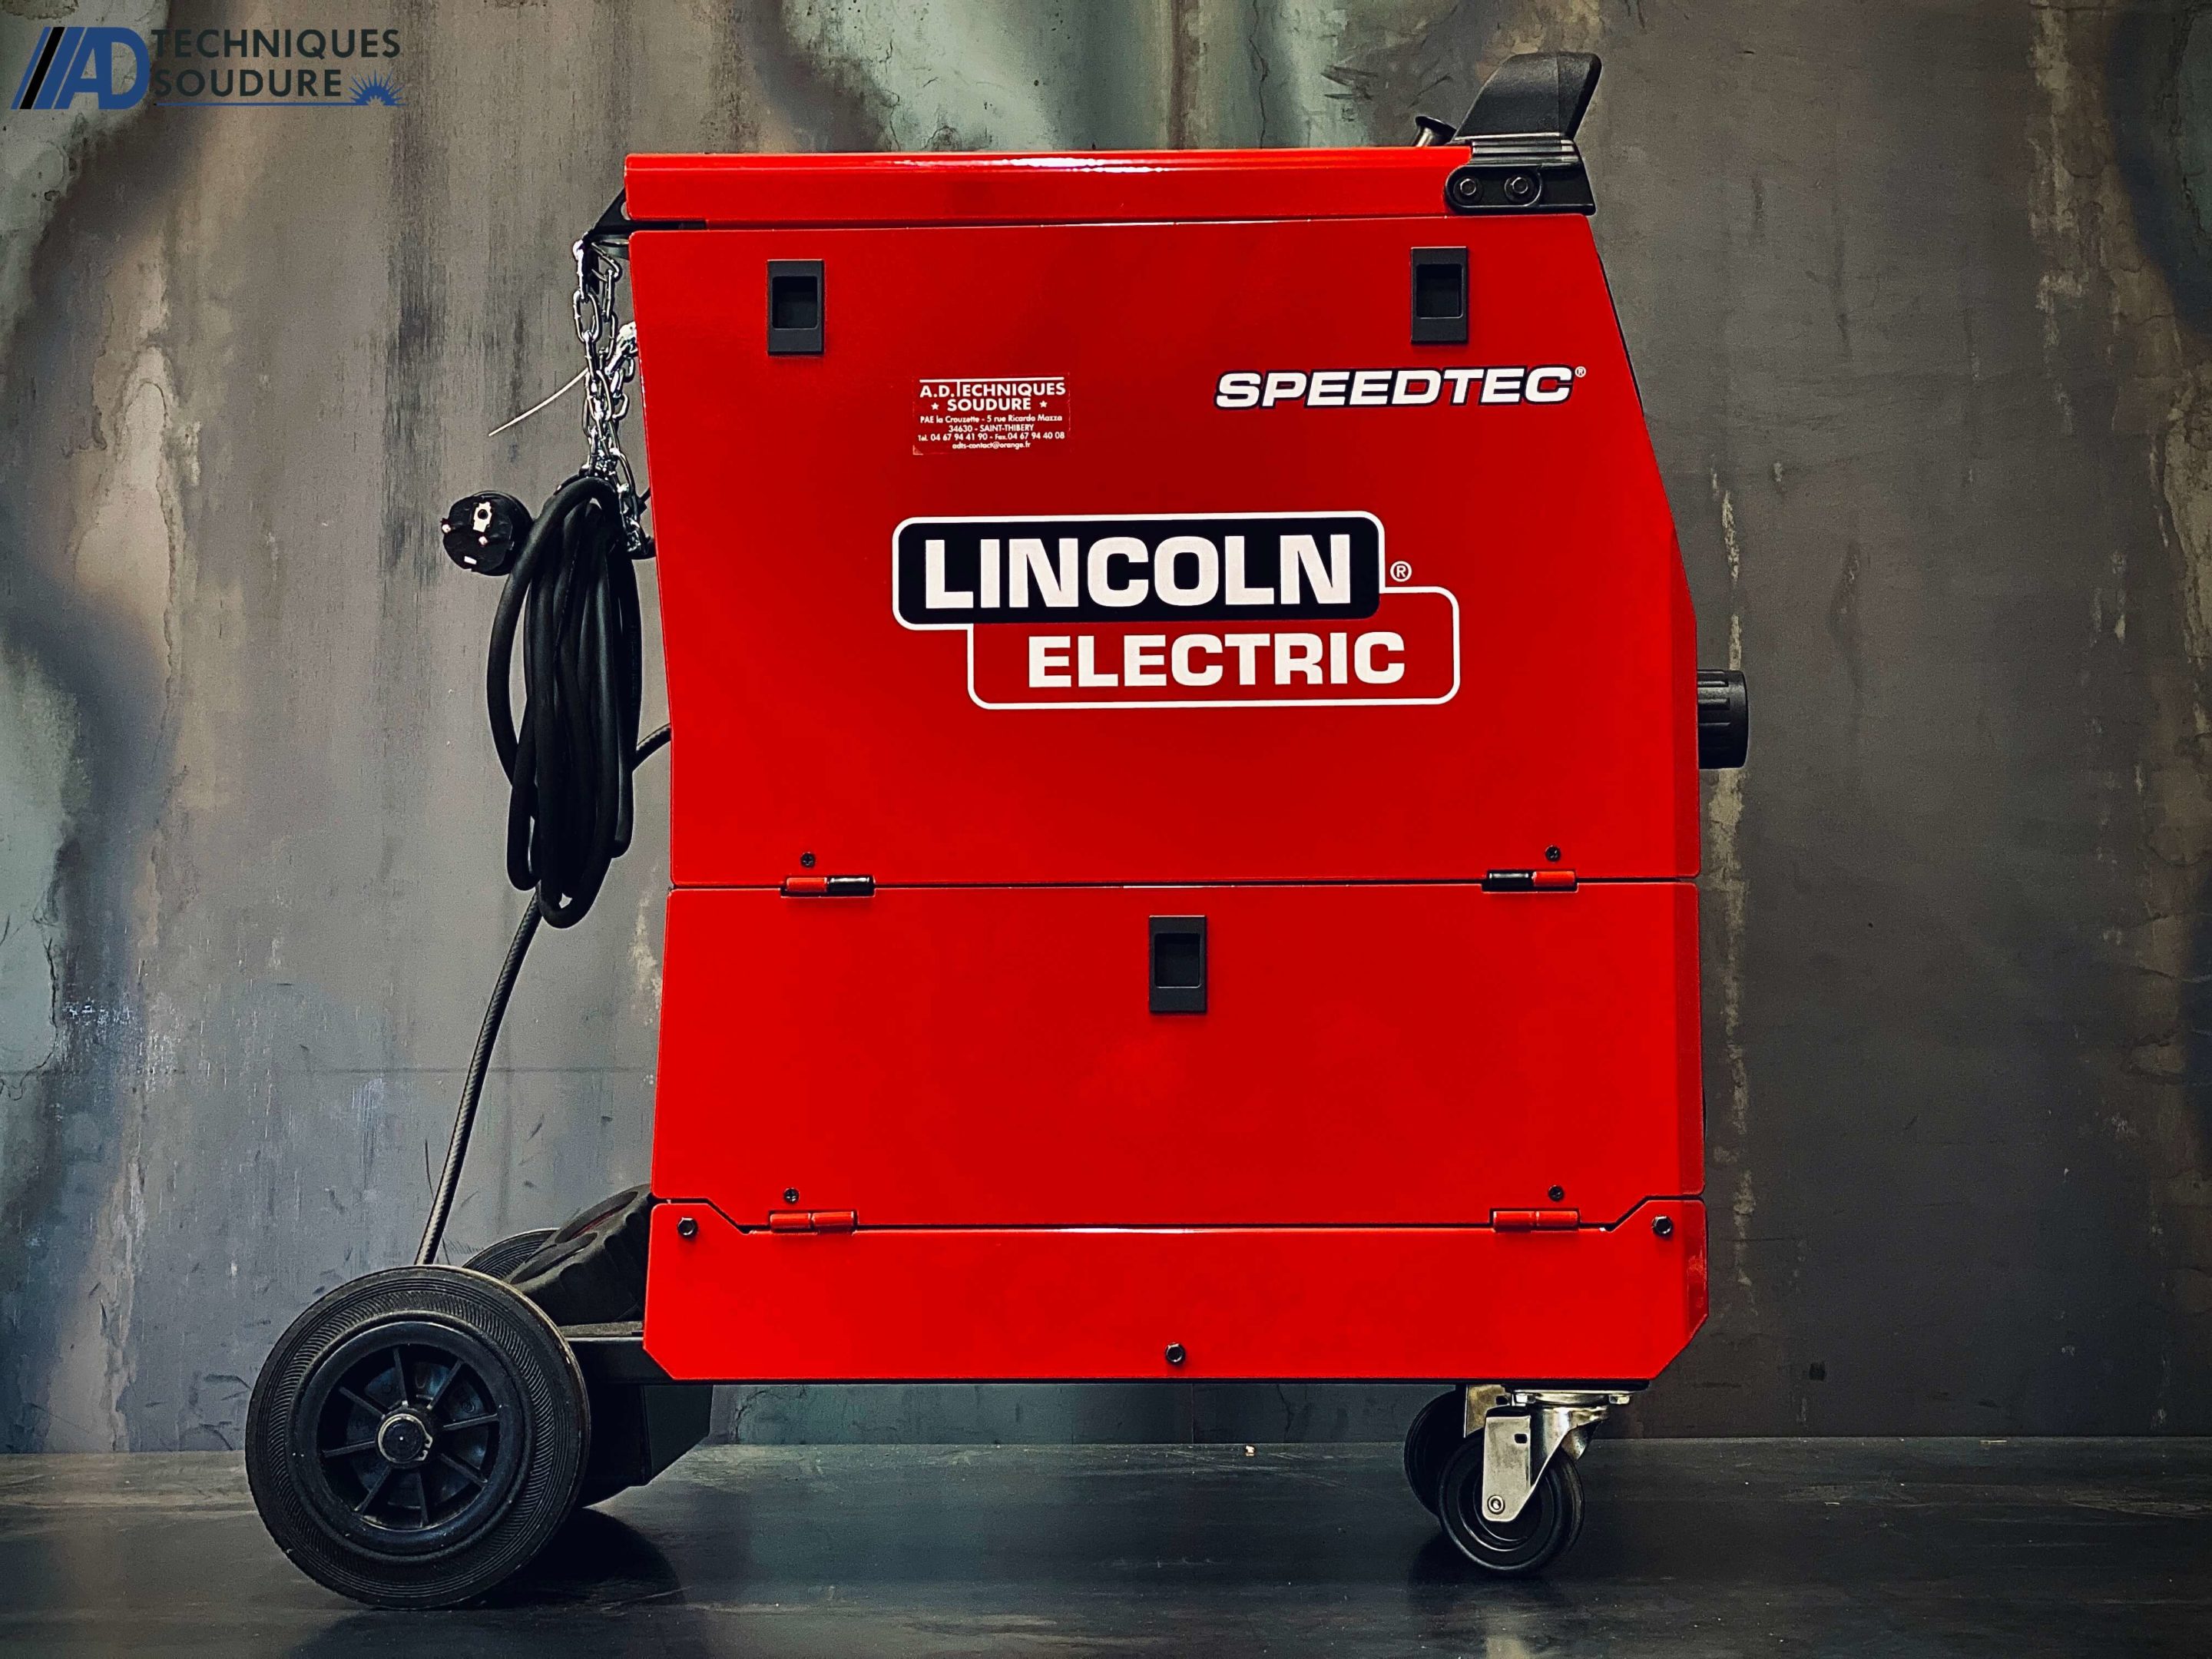 Poste à souder MIG-MAG multi procédés SPEEDTEC 215C Lincoln Electric monophasé